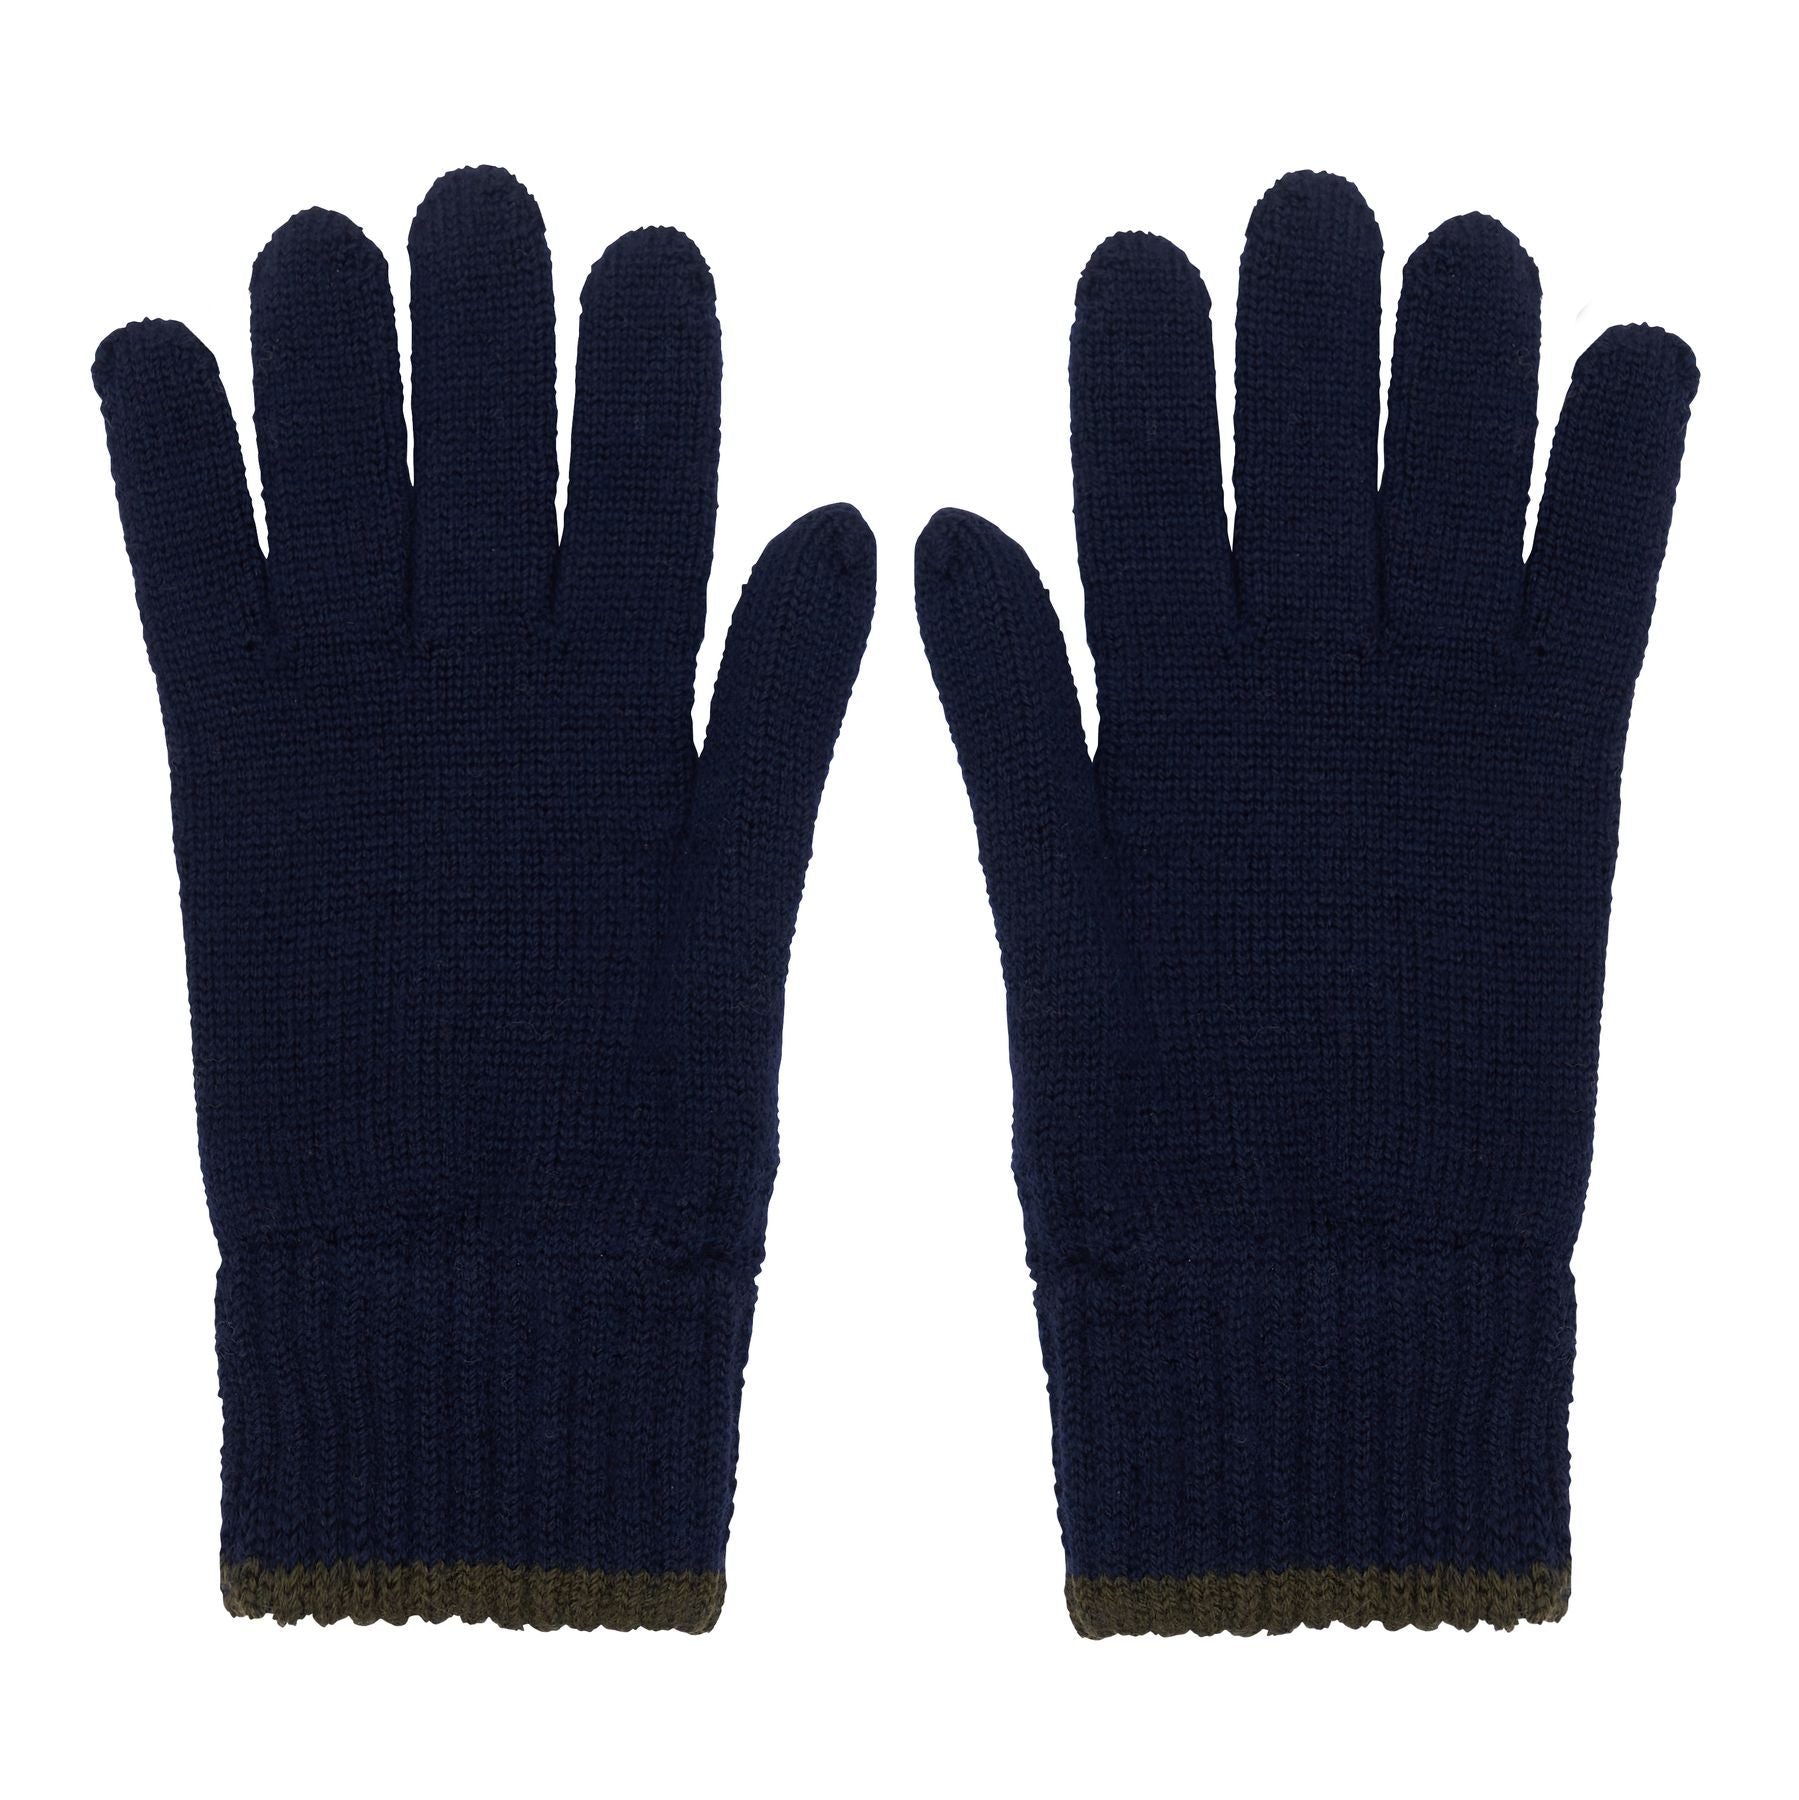 gloves-bahia-en-maille-navy-filet-kaki